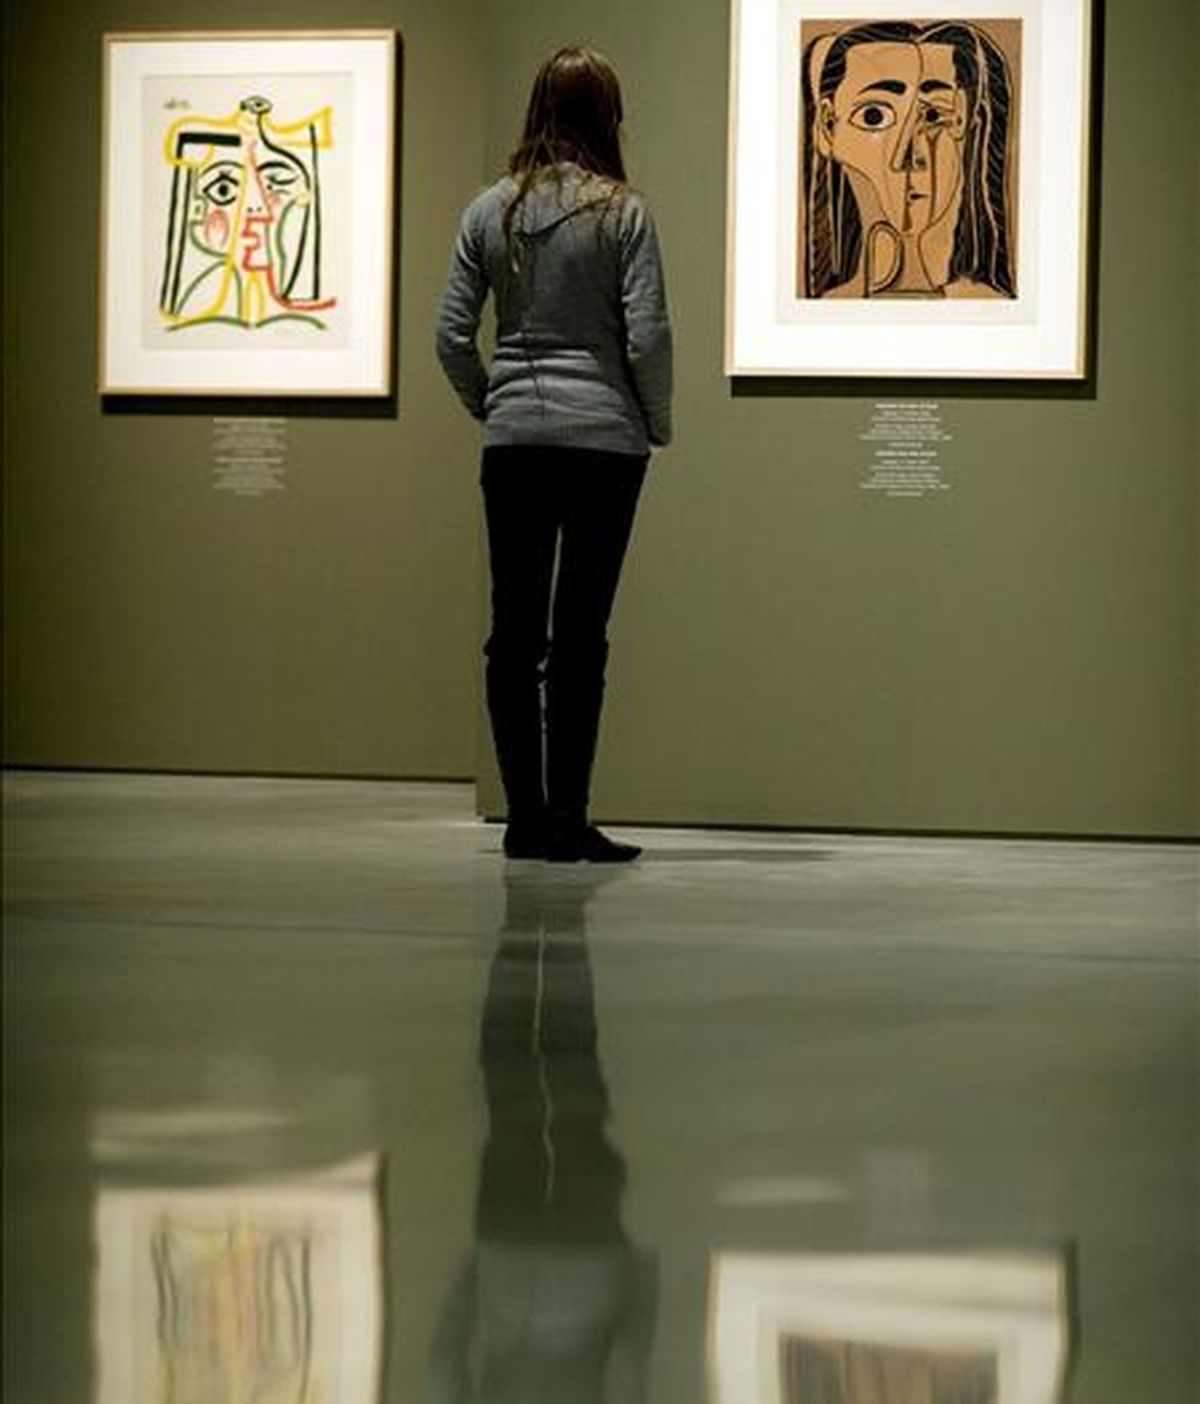 Una joven contempla las obras de la exposición "Picasso linograbador. Retratos de Jacqueline", una exposición en el Centro Cultural Bancaja de Valencia. EFE/Archivo